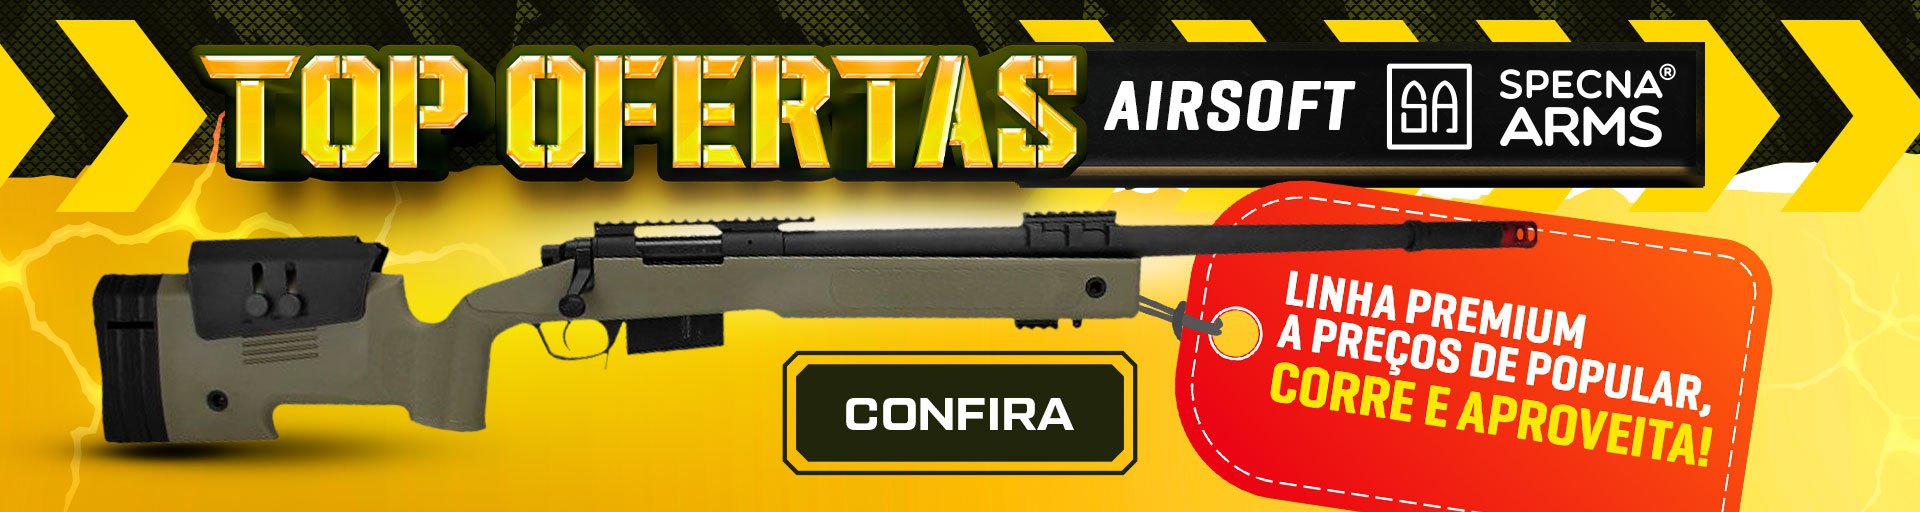 TOP Ofertas Airsoft Specna Arms - Linha Premium a preços de Popular, corre e aproveita!